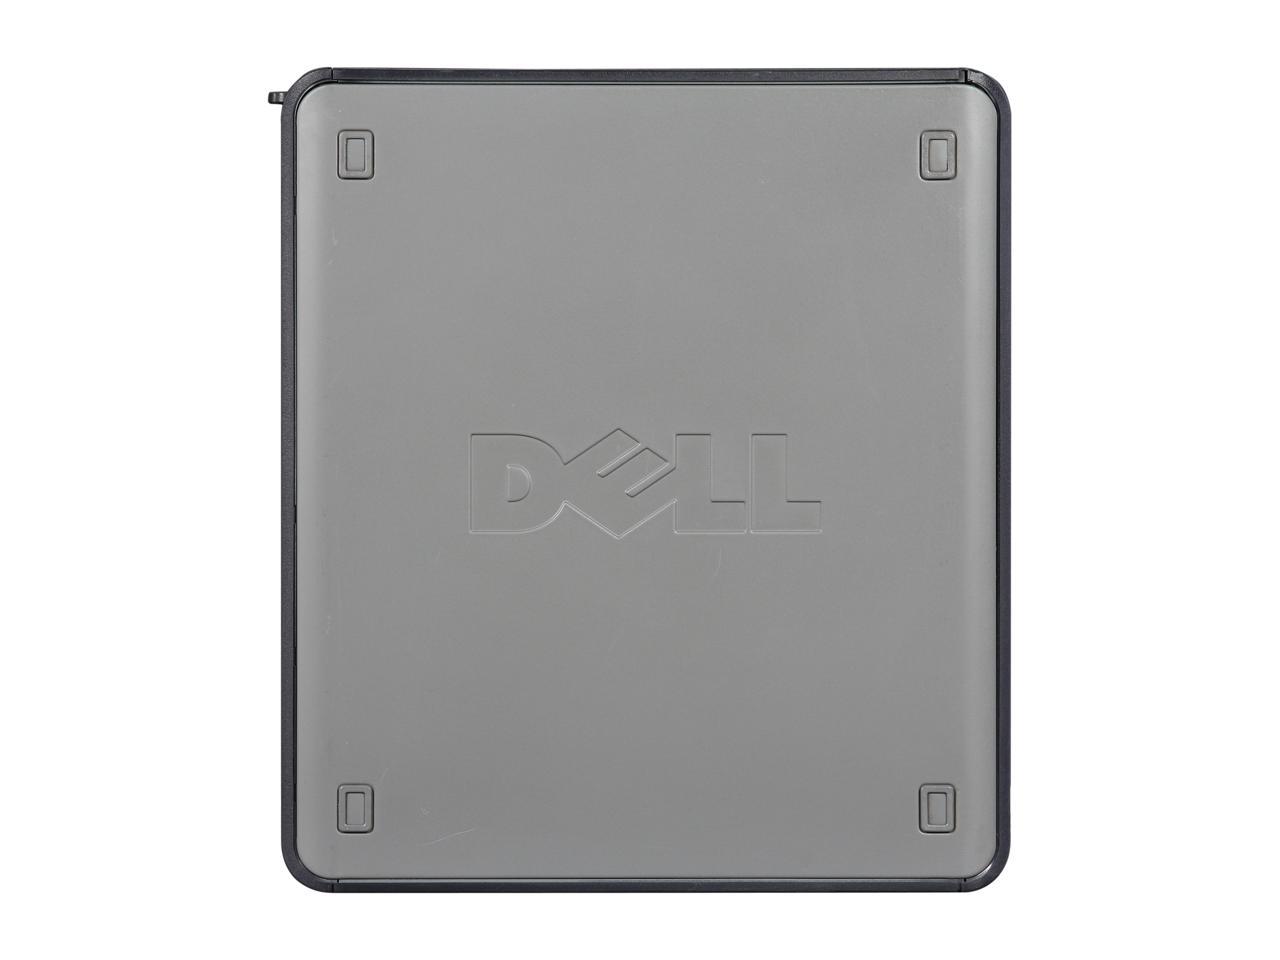 DELL Desktop PC OptiPlex GX620 Pentium 4 2.83 GHz 2GB 80 GB HDD Windows 7 Professional 32-Bit